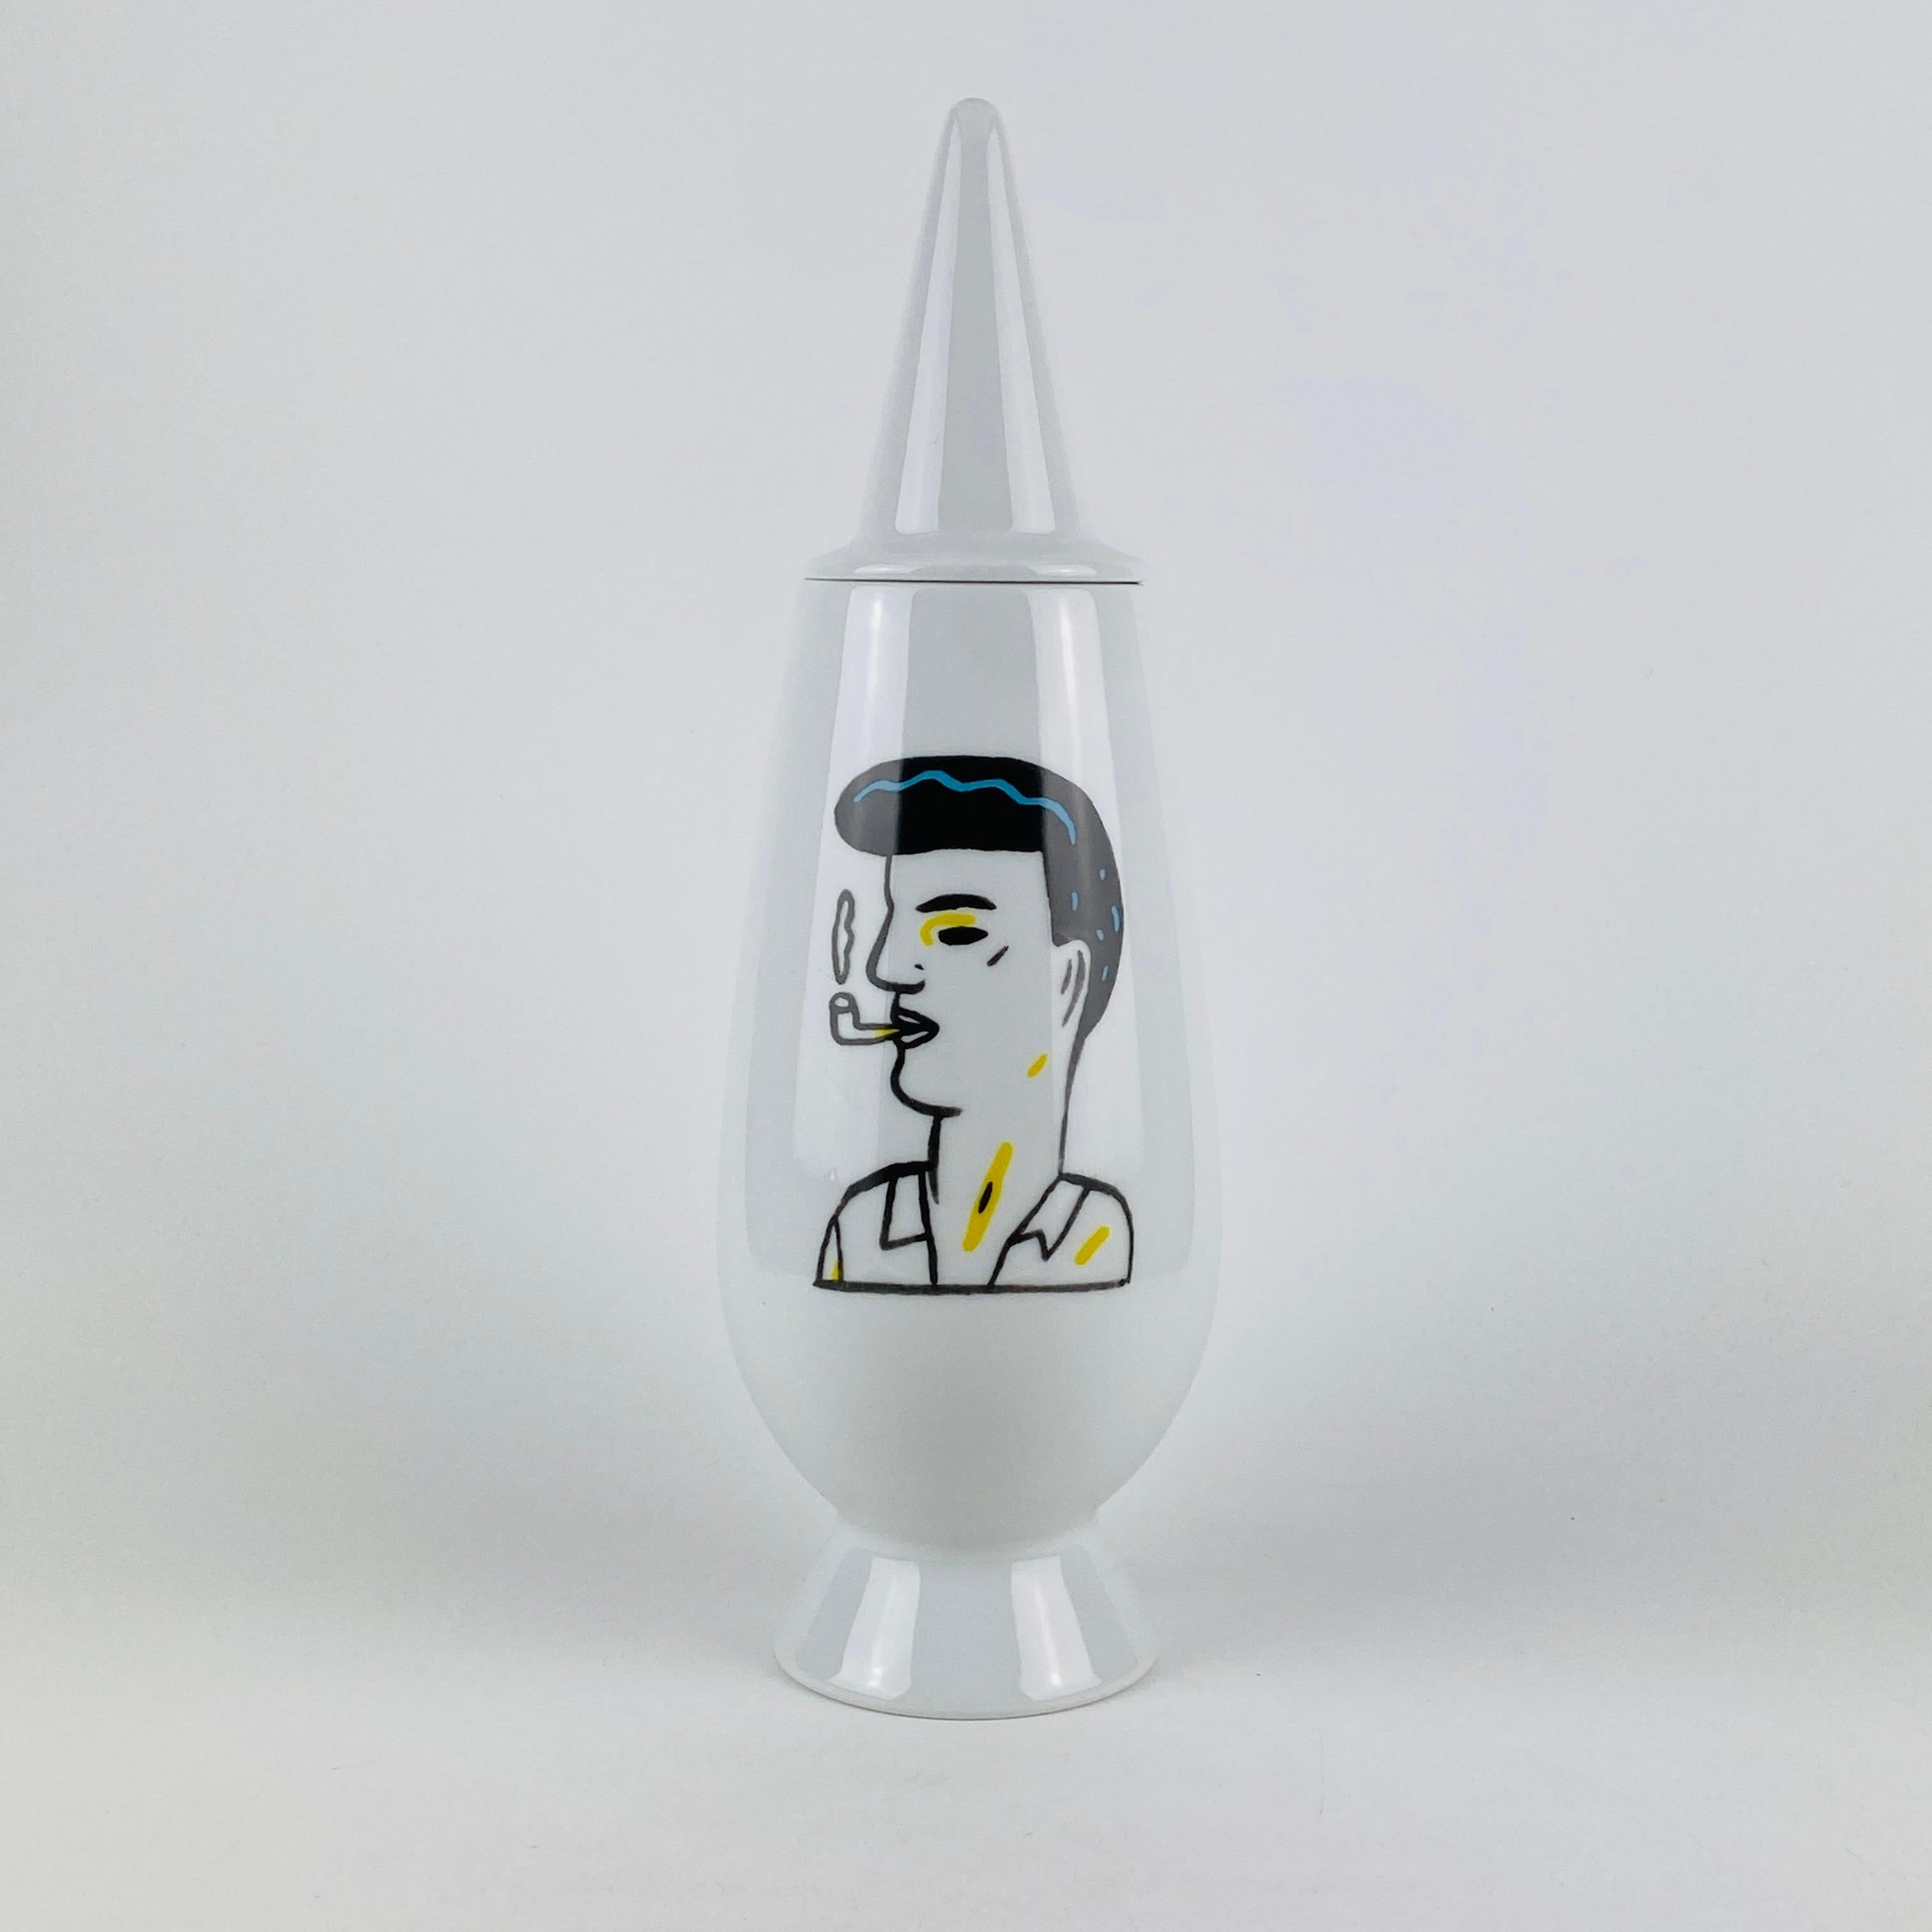 Diese Tendentse Alessi Vase mit Deckel ist Teil der auf 10.000 Exemplare limitierten Serie 100% Make-up. Diese Serie besteht aus 100 verschiedenen Vasen und 100 verschiedenen Designern/Dekorateuren. 

Diese Vase wurde von Alessandro Mendini